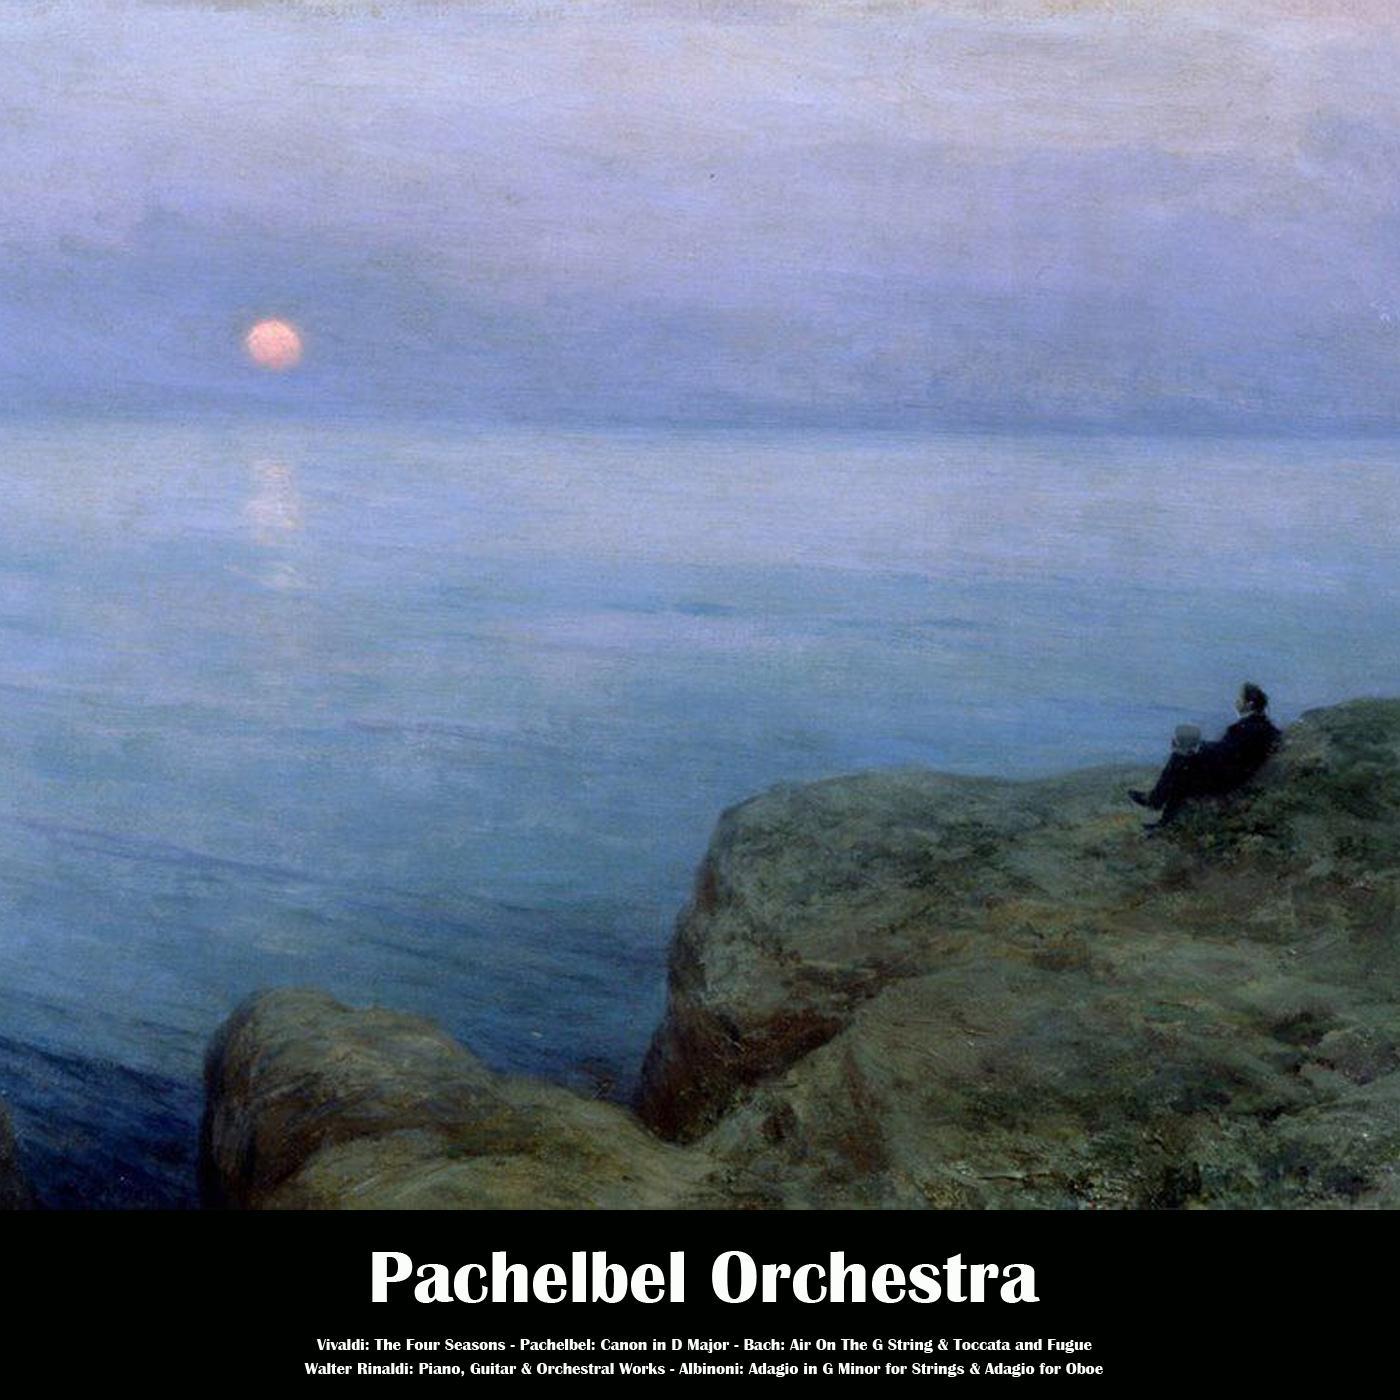 Pachelbel Orchestra - Pensiero, Piano Concerto, Op.18, No.1: Allegro